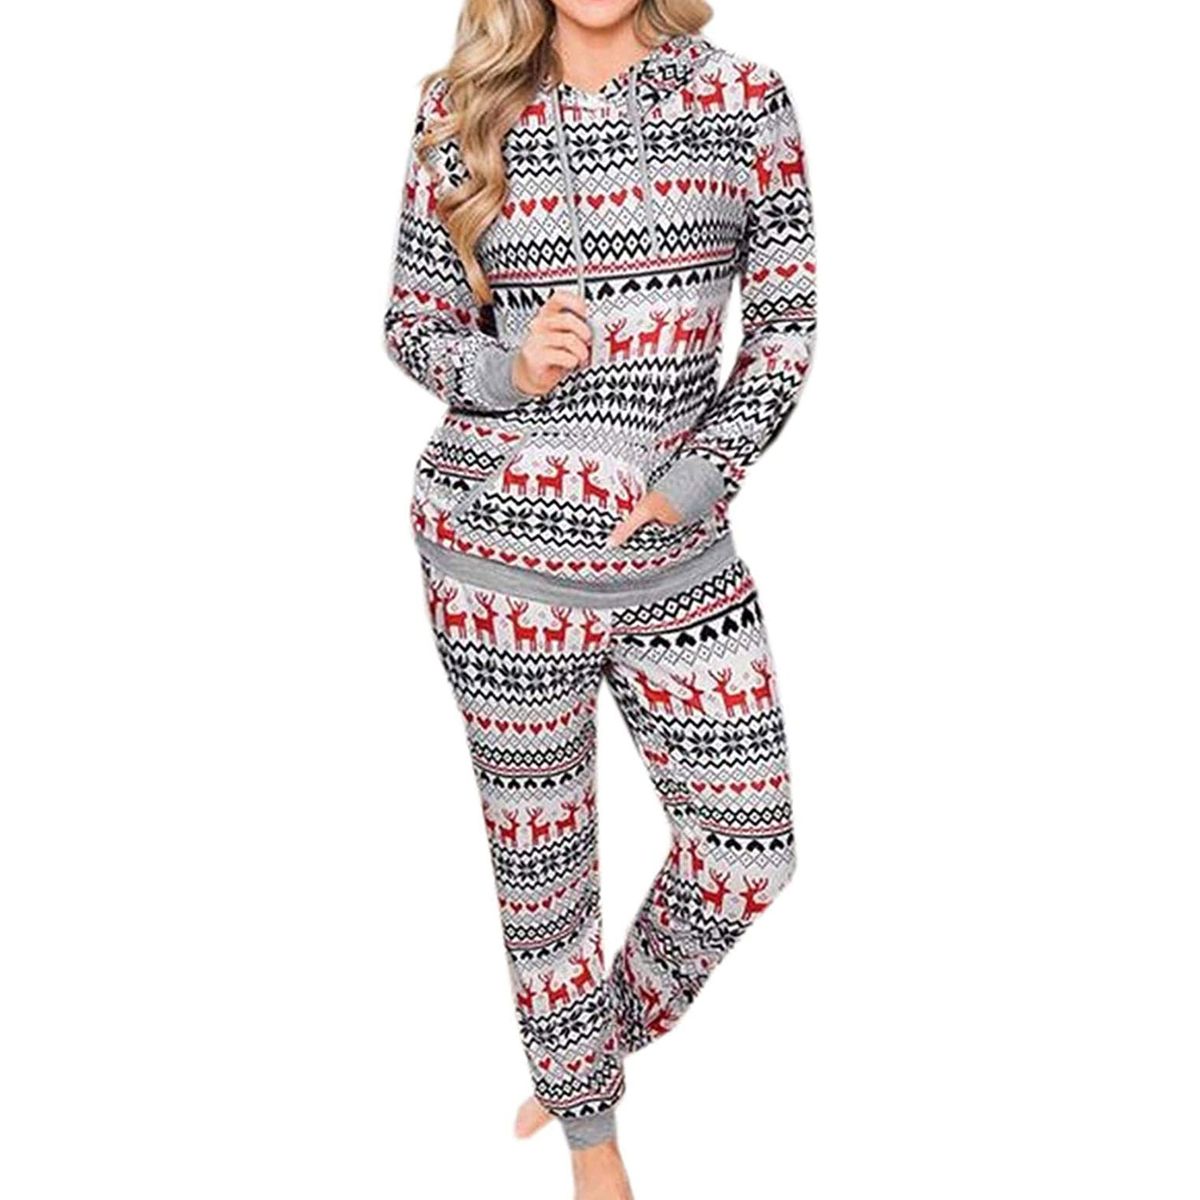 woman in pajamas